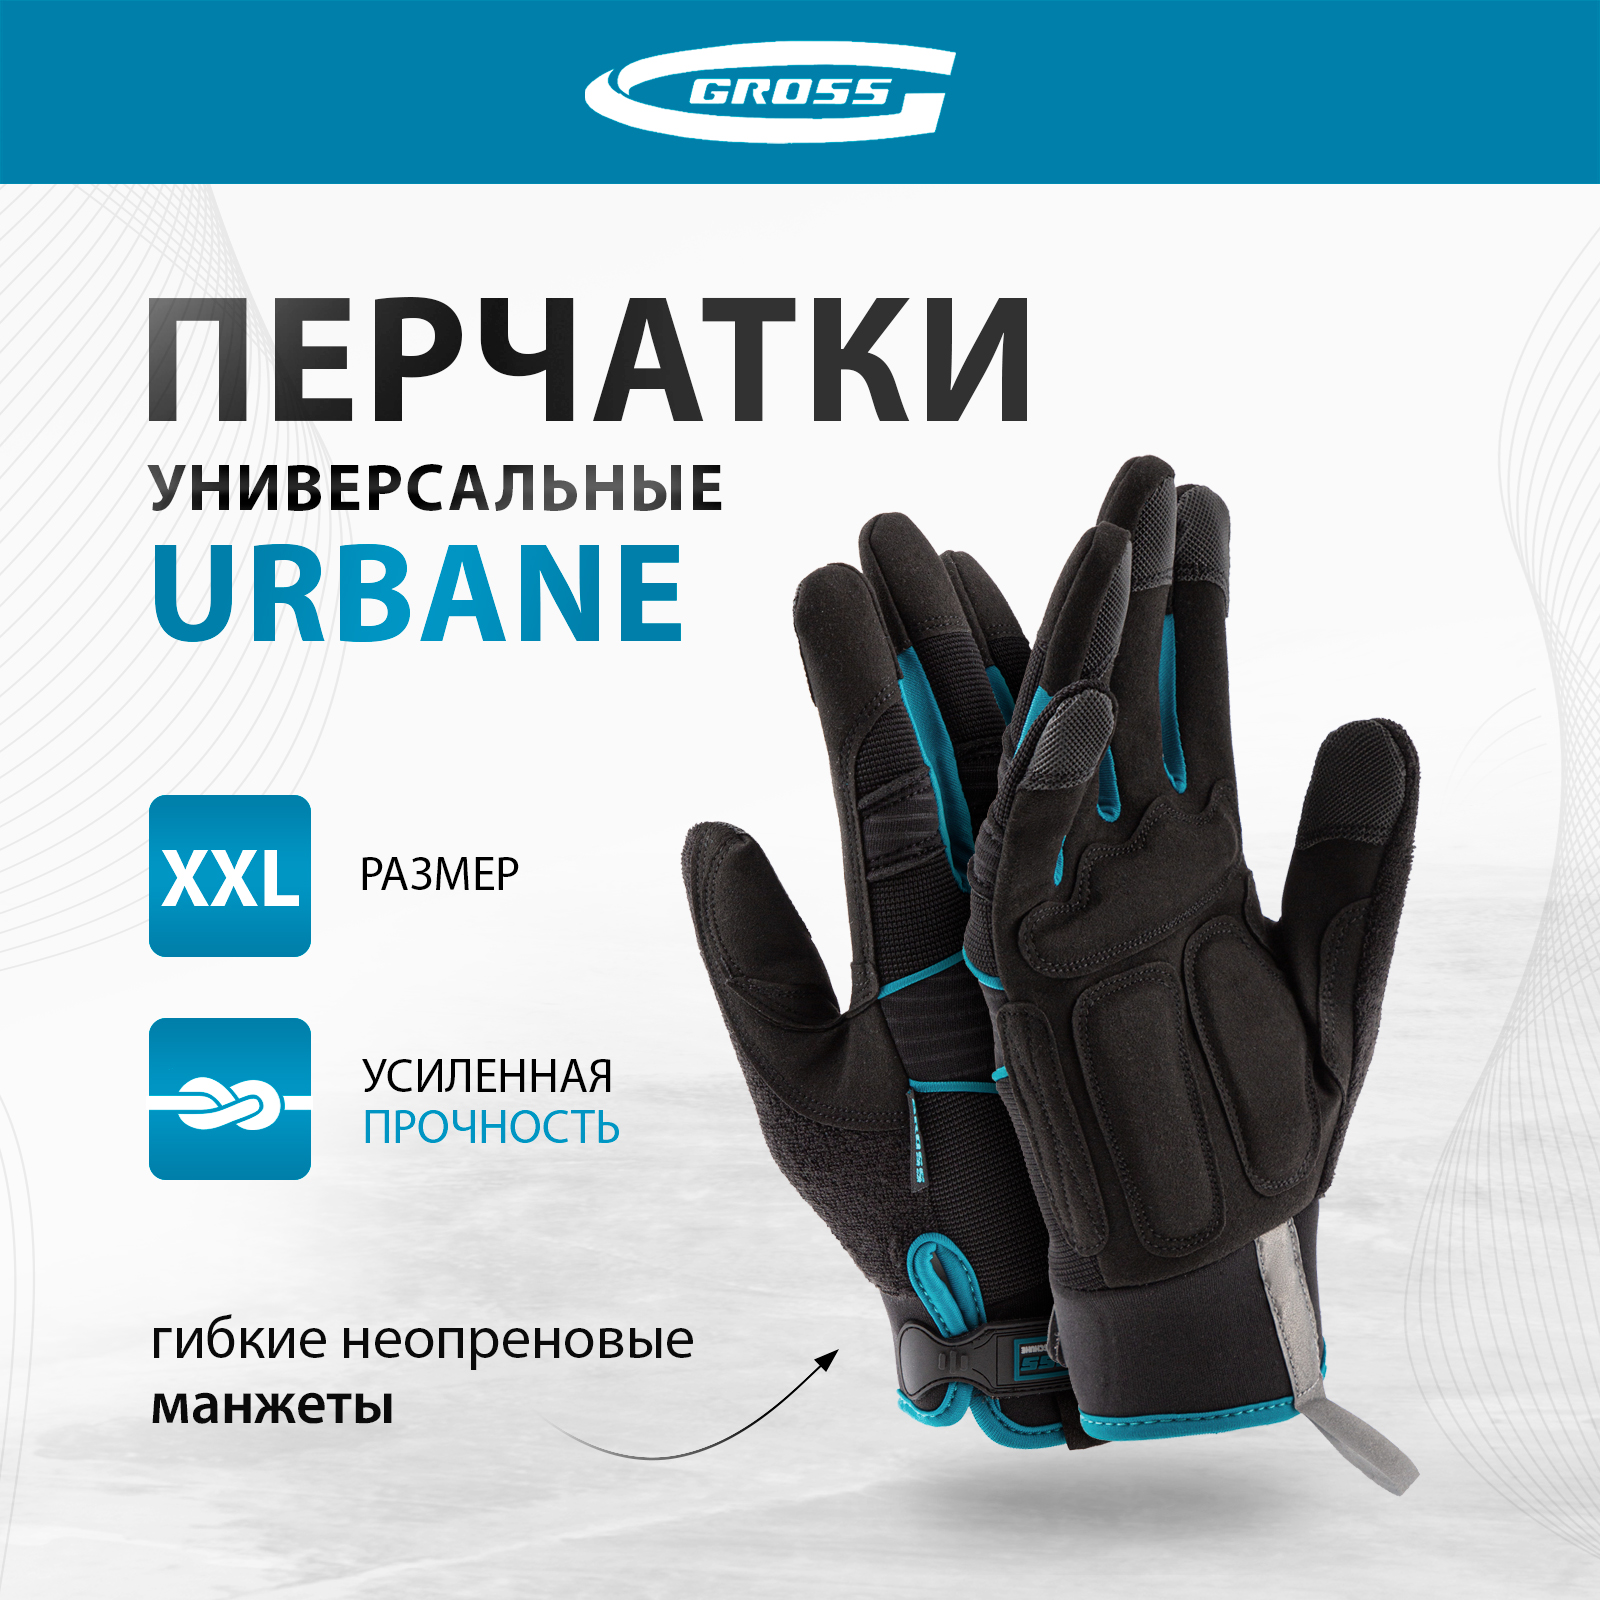 Перчатки универсальные комбинированные GROSS URBANE размер XL (10) 90313 перчатки универсальные комбинированные gross stylish с накладками р l 9 90319